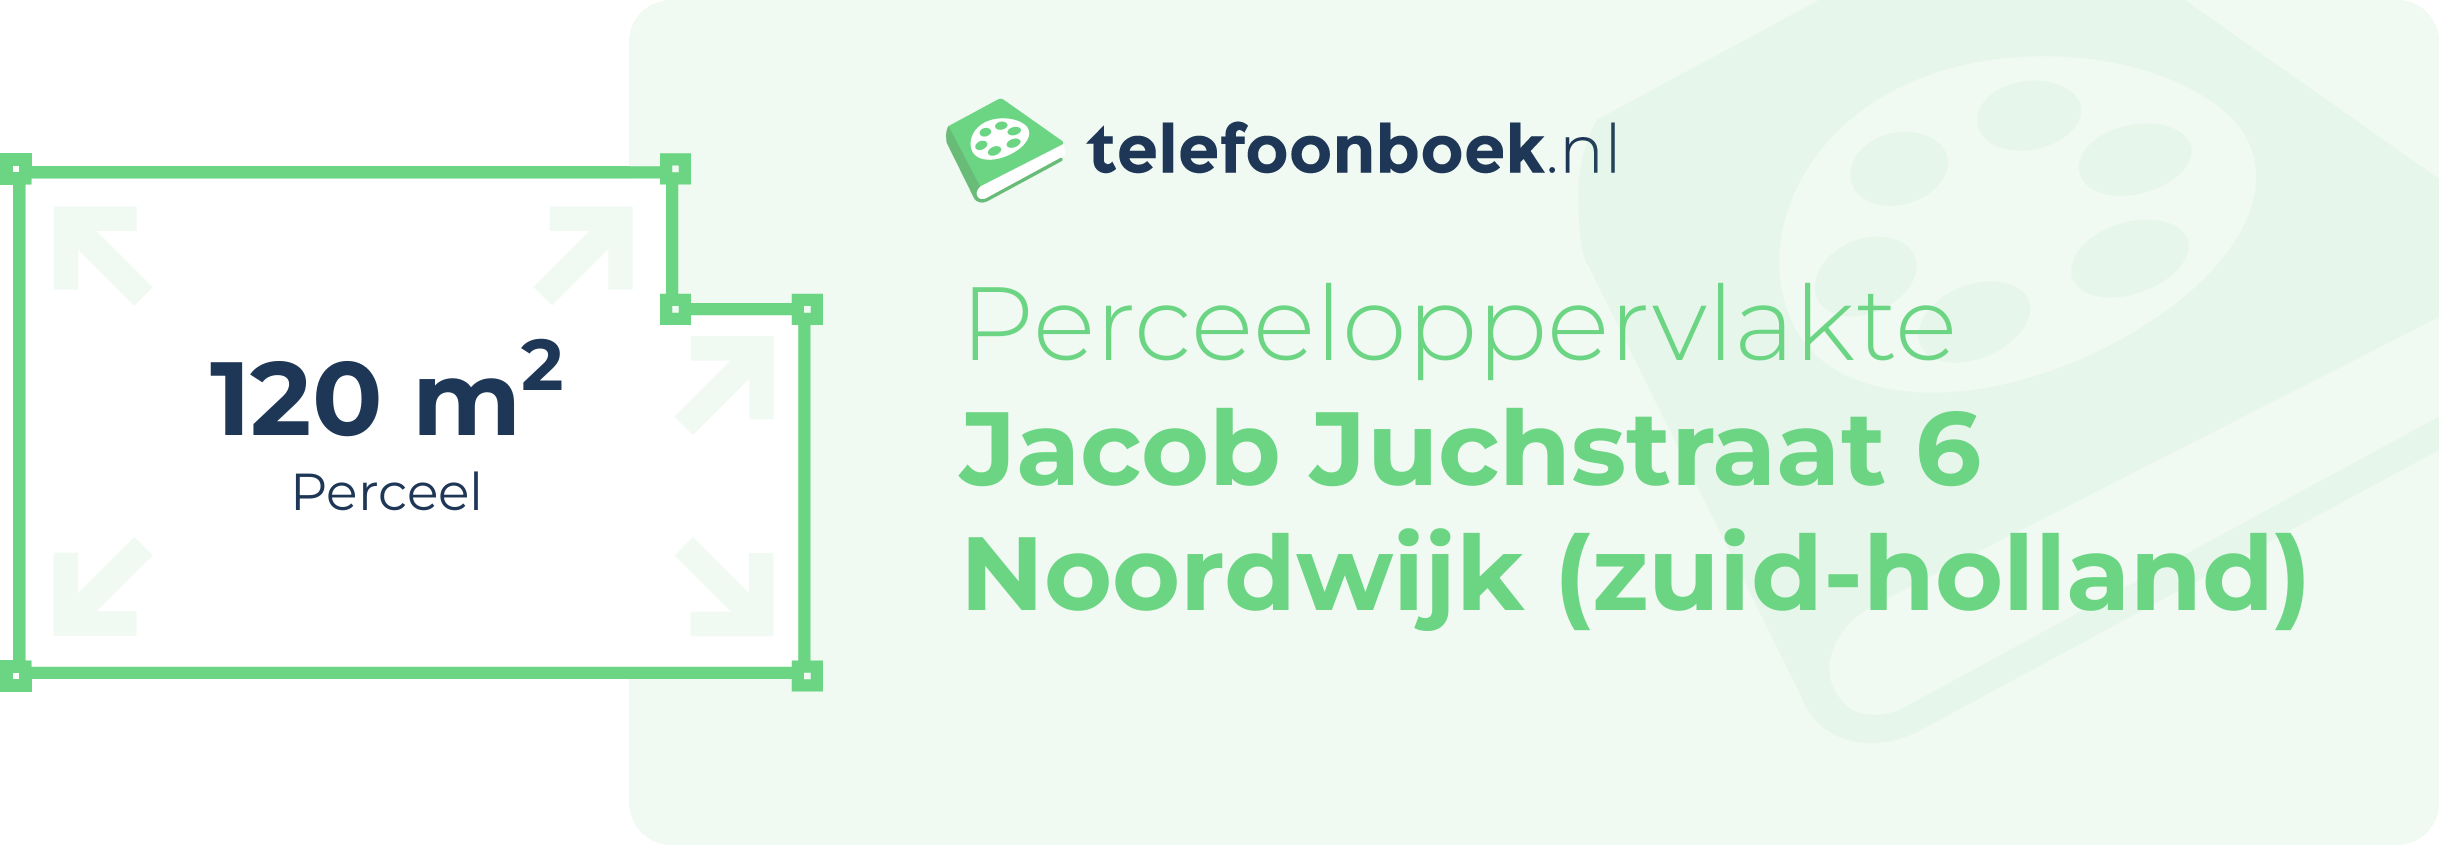 Perceeloppervlakte Jacob Juchstraat 6 Noordwijk (Zuid-Holland)